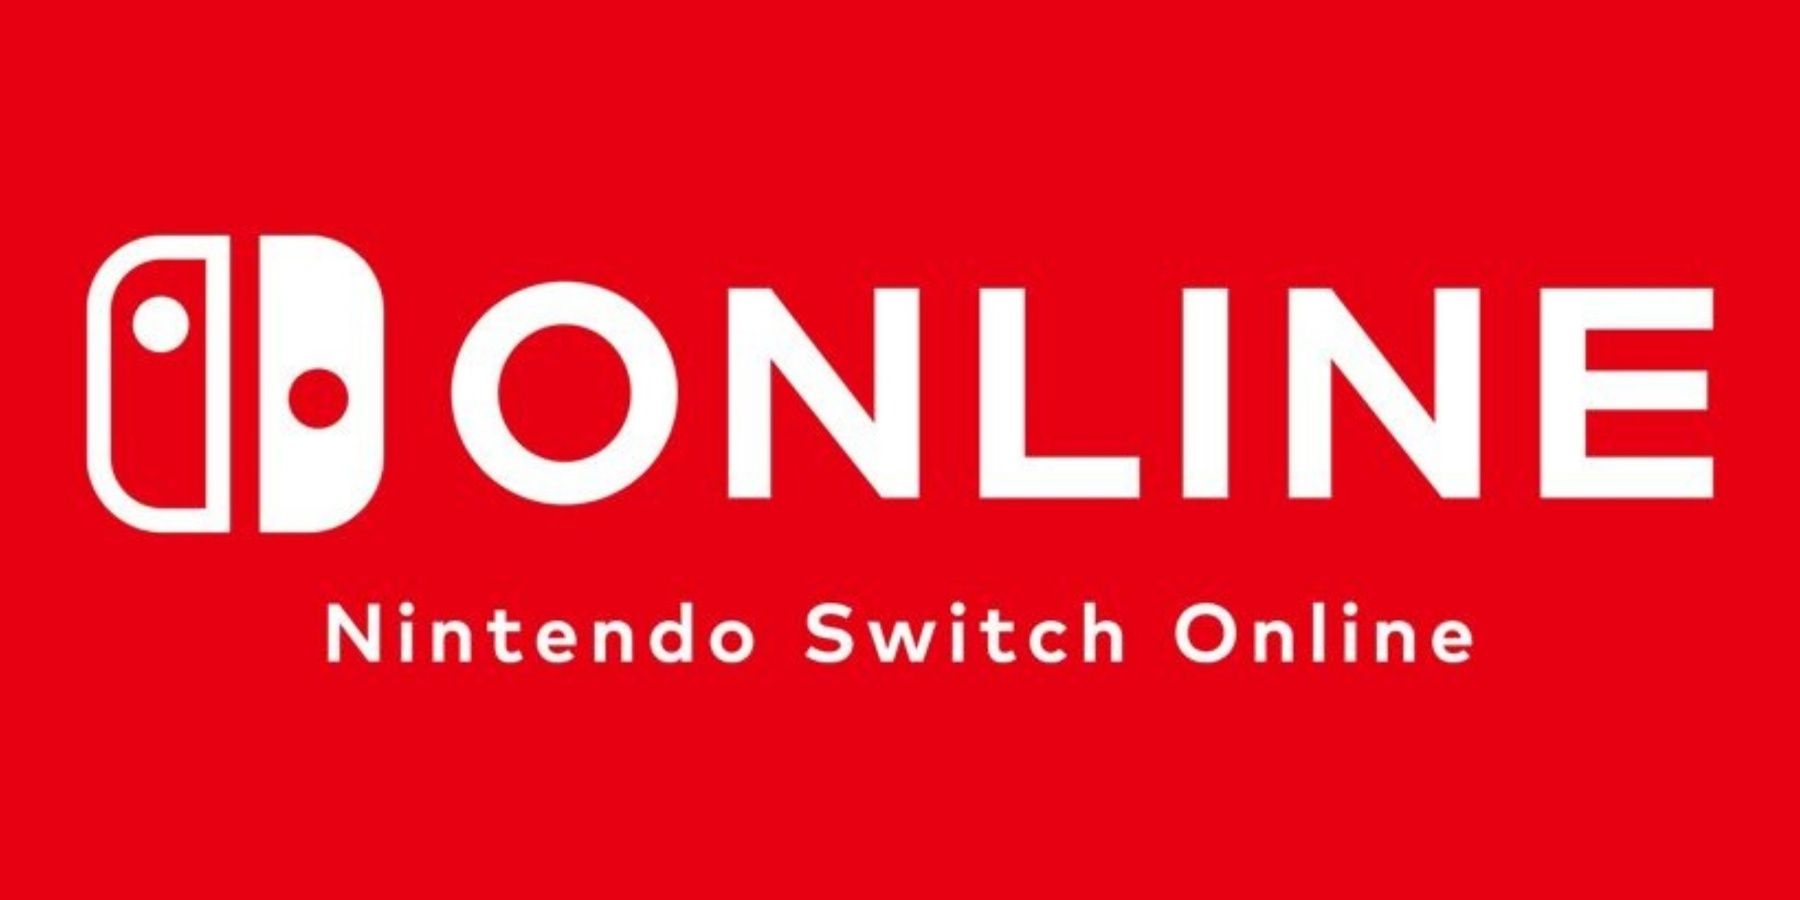 Nuuvem.com on X: Avisos de utilidade pública para Nintendistas assinantes  do Nintendo Switch Online: Cadence of Hyrule: Crypt of the NecroDancer  Featuring The Legend of Zelda estará no Testes de Jogos para